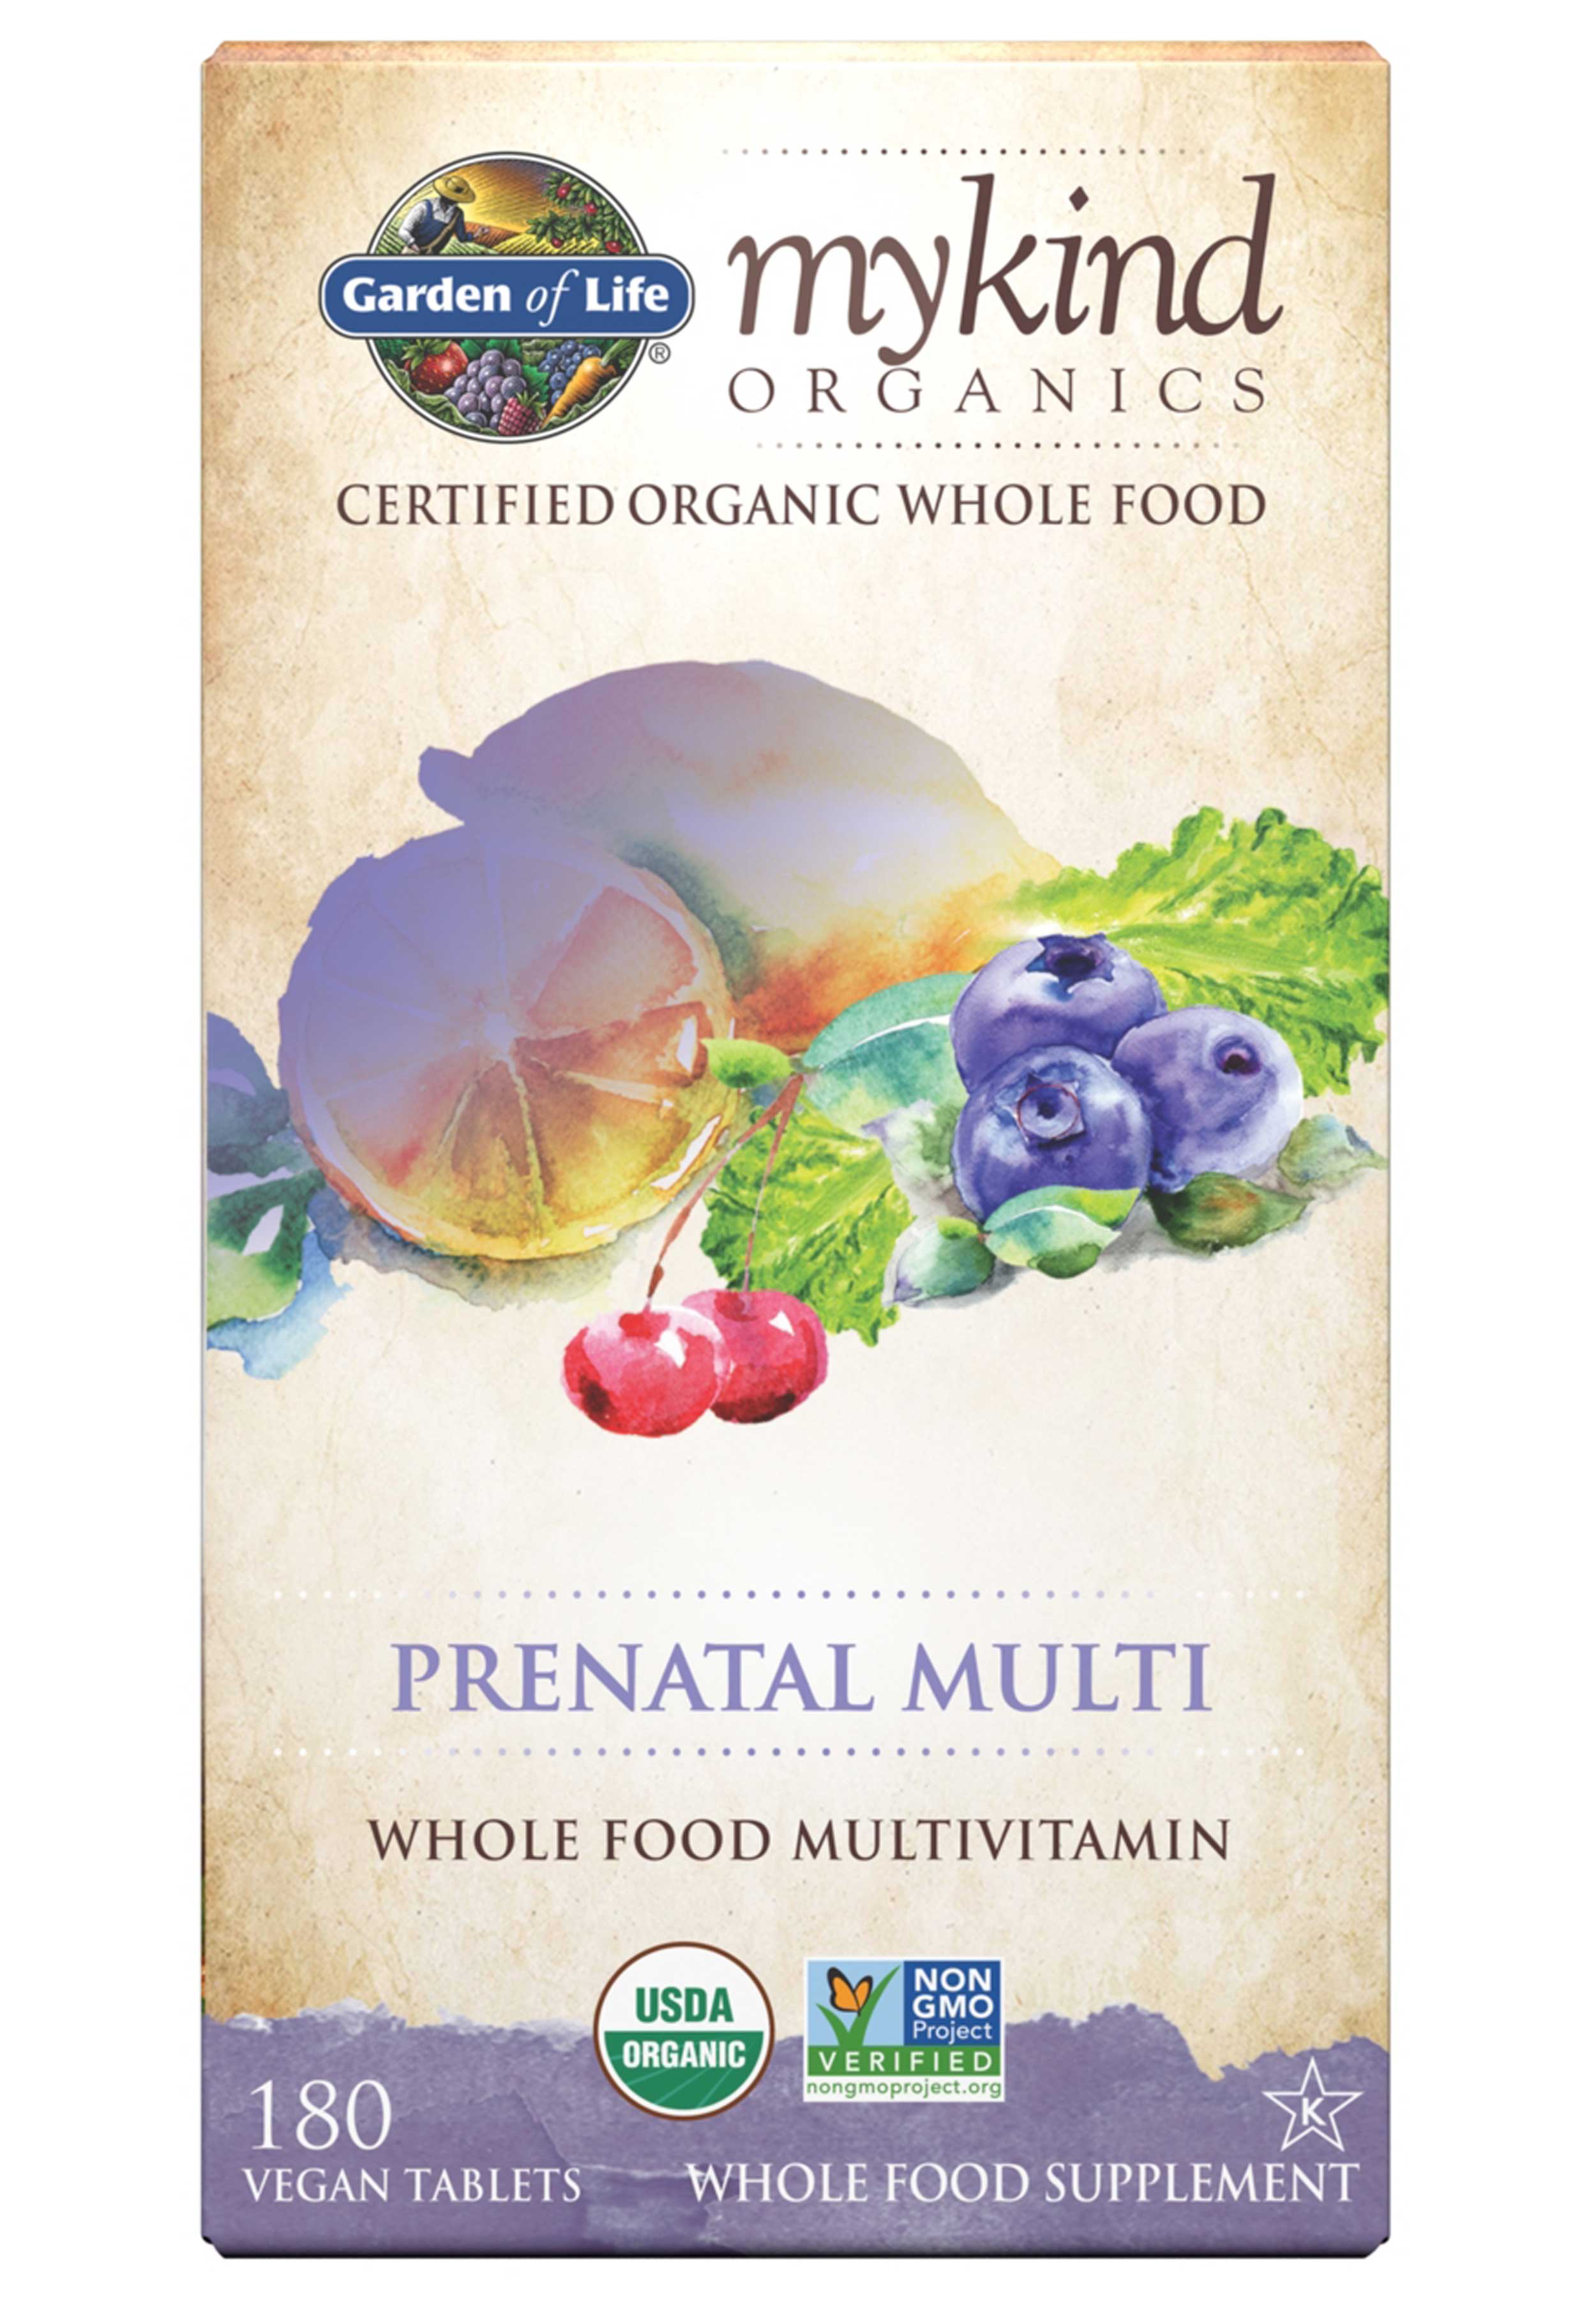 Garden of Life mykind Organics Prenatal Multivitamin